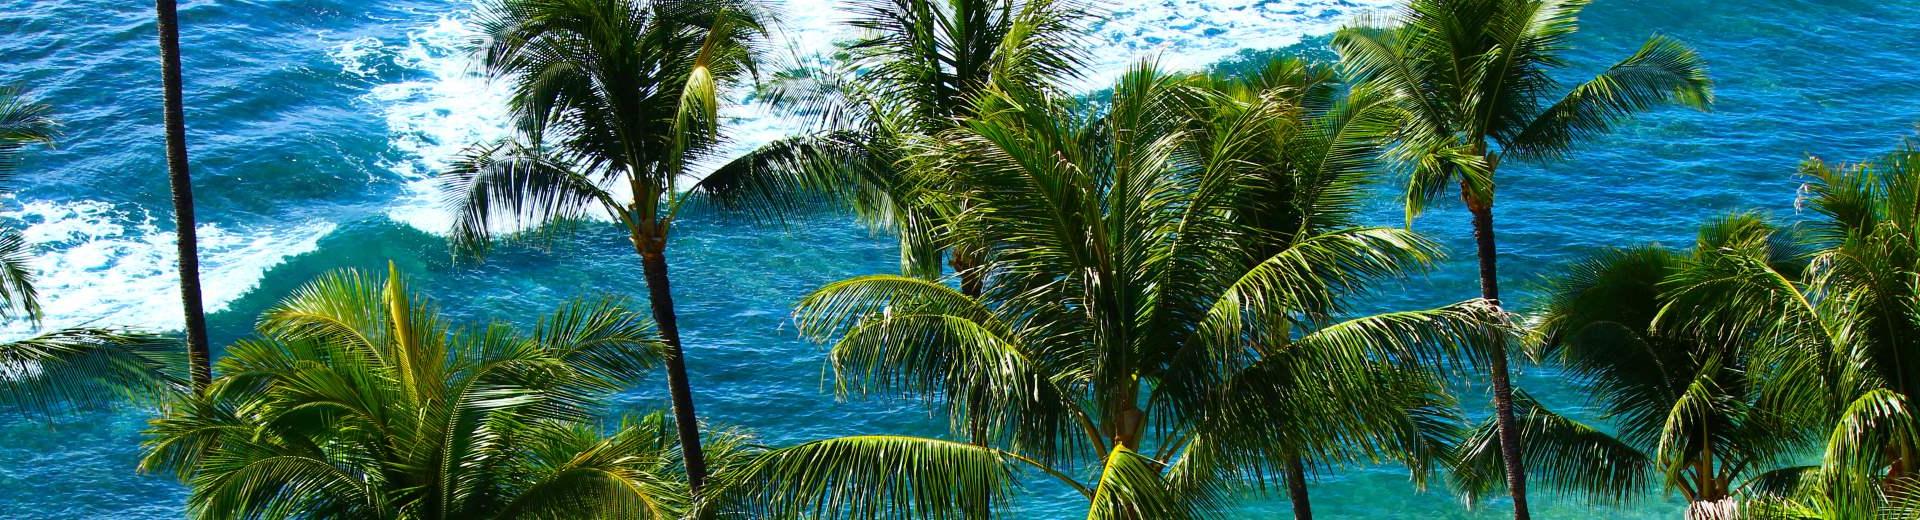 Ferienwohnungen & Ferienhäuser für Urlaub auf Guadeloupe - Casamundo